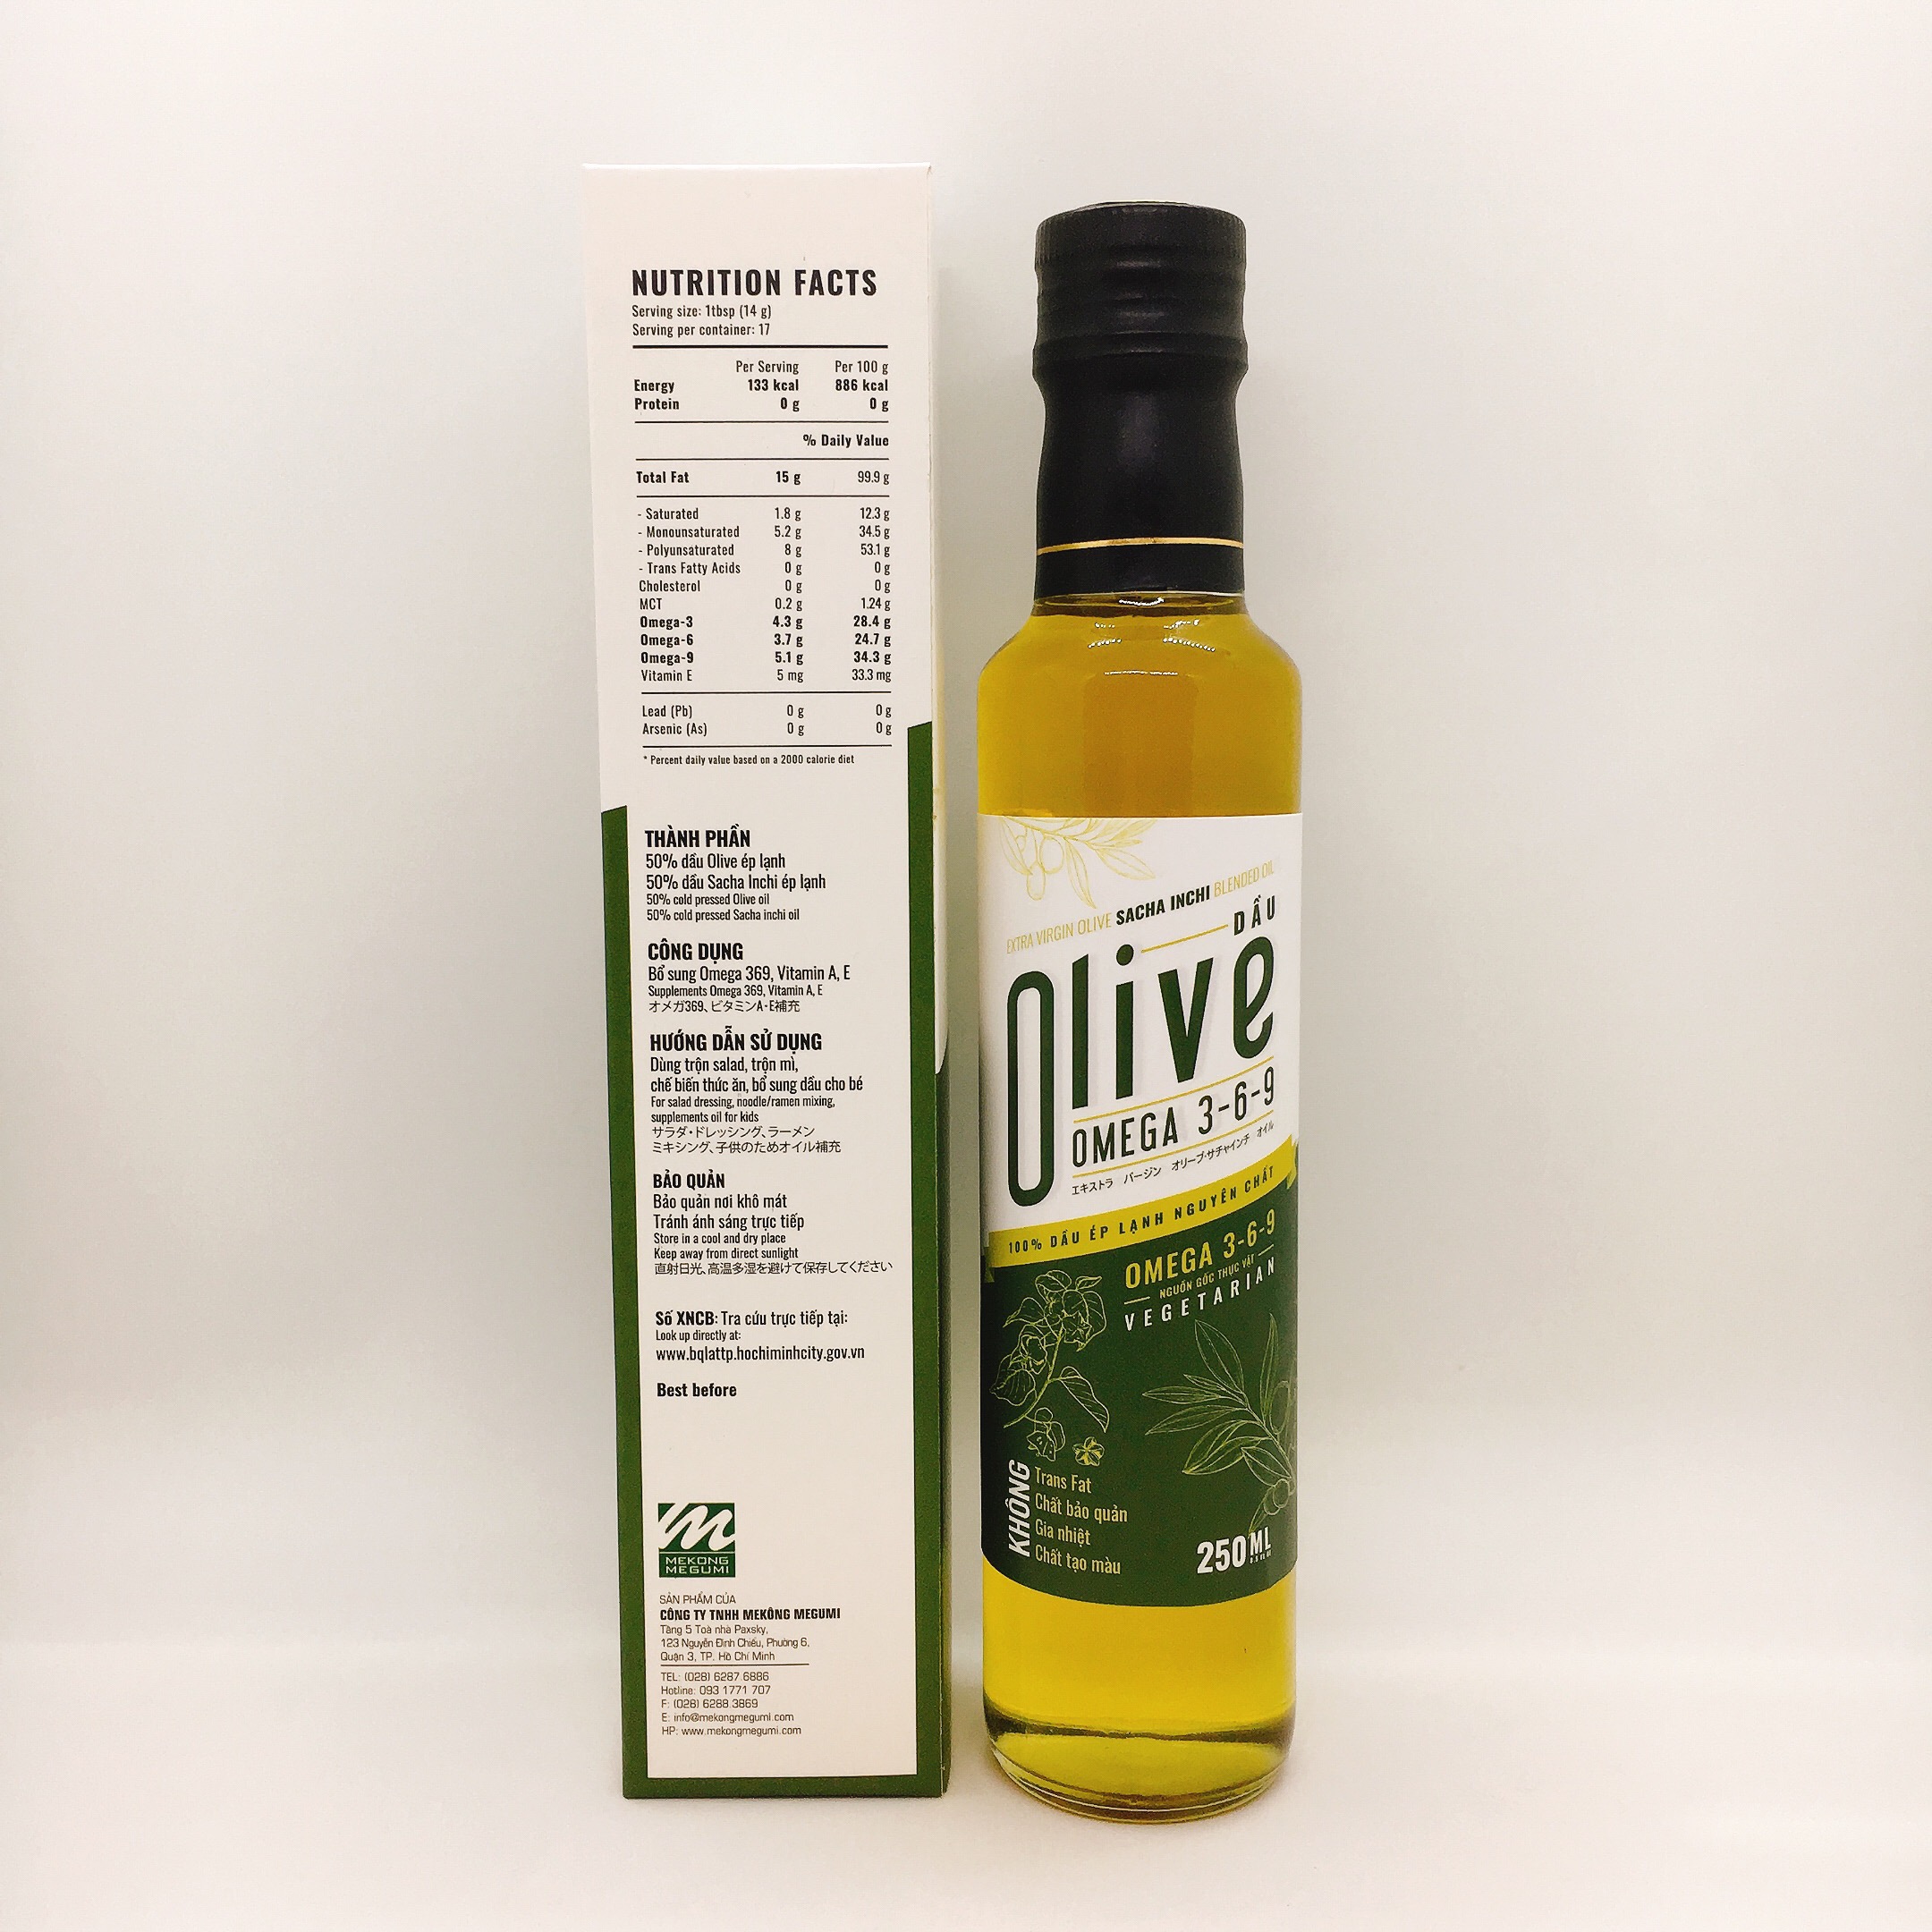 Dầu Olive Sachi Inchi Omega 3-6-9 (Extra virgin olive sacha inchi oil) – 250ml – 100% ép lạnh nguyên chất